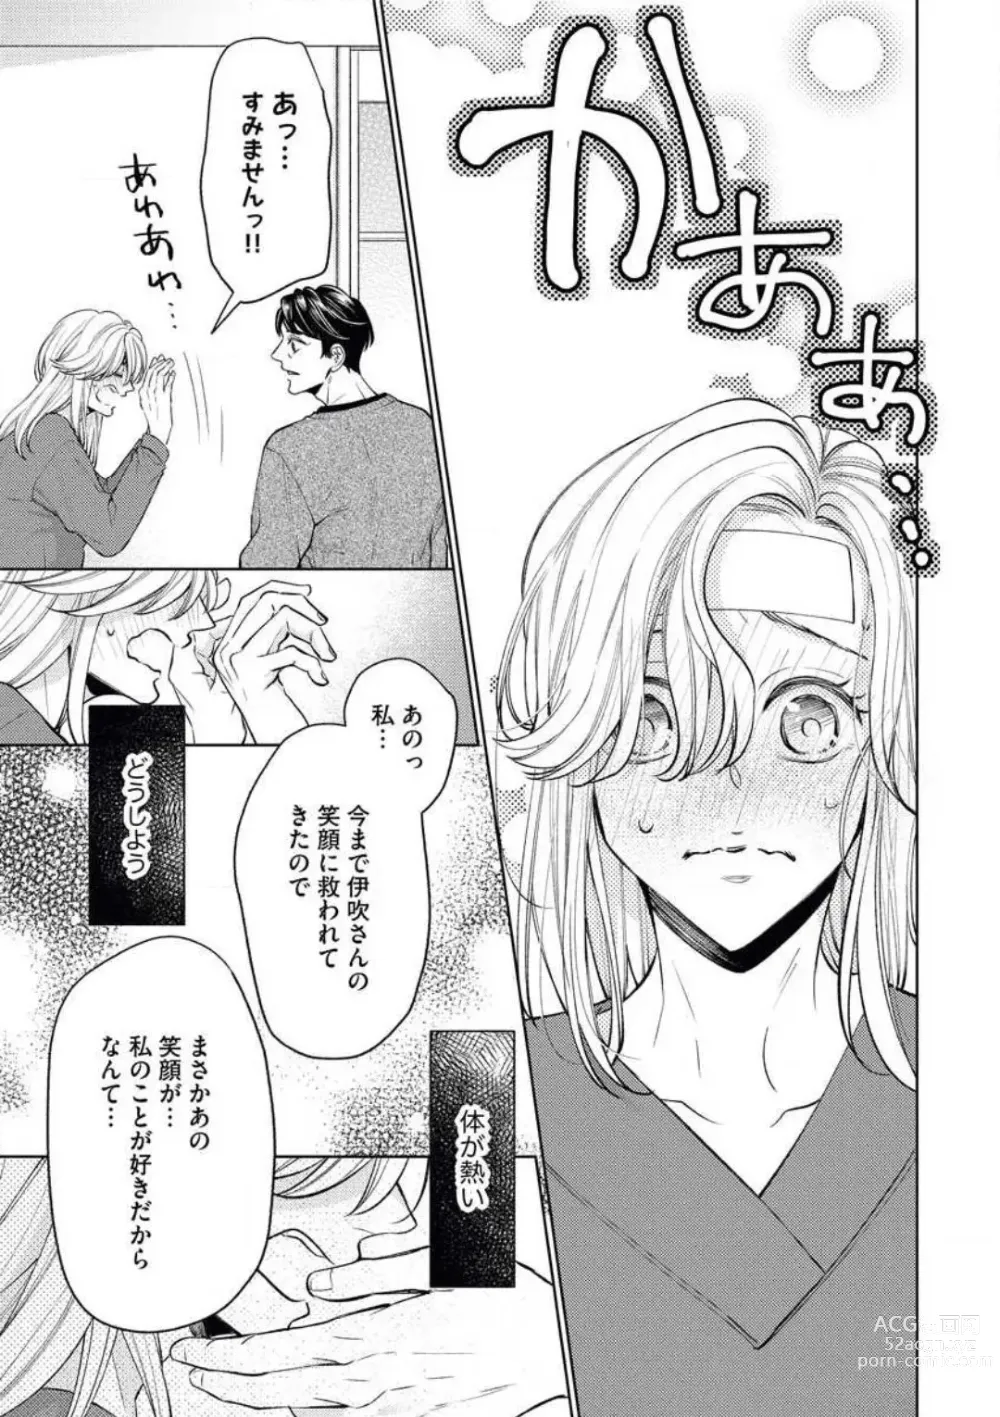 Page 27 of manga Anata o Kudasai!